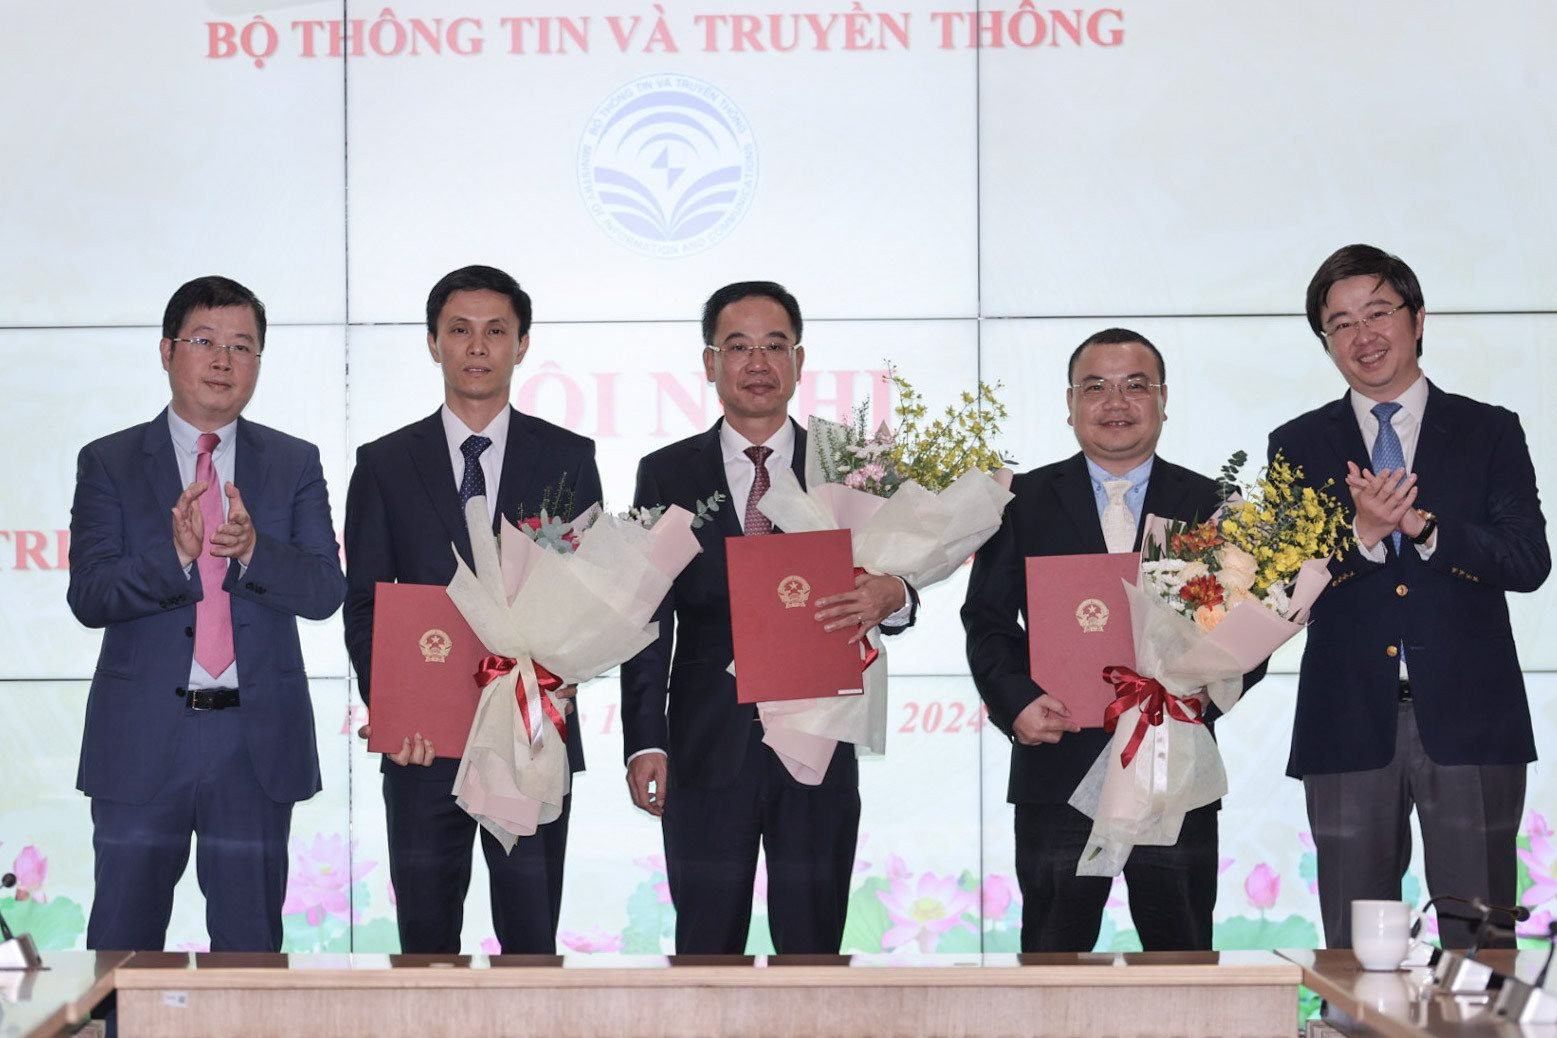 Lãnh đạo Bộ TT&TT trao quyết định điều động và bổ nhiệm Tổng Biên tập Tạp chí Thông tin và Truyền thông cho ông Nguyễn Văn Hiếu